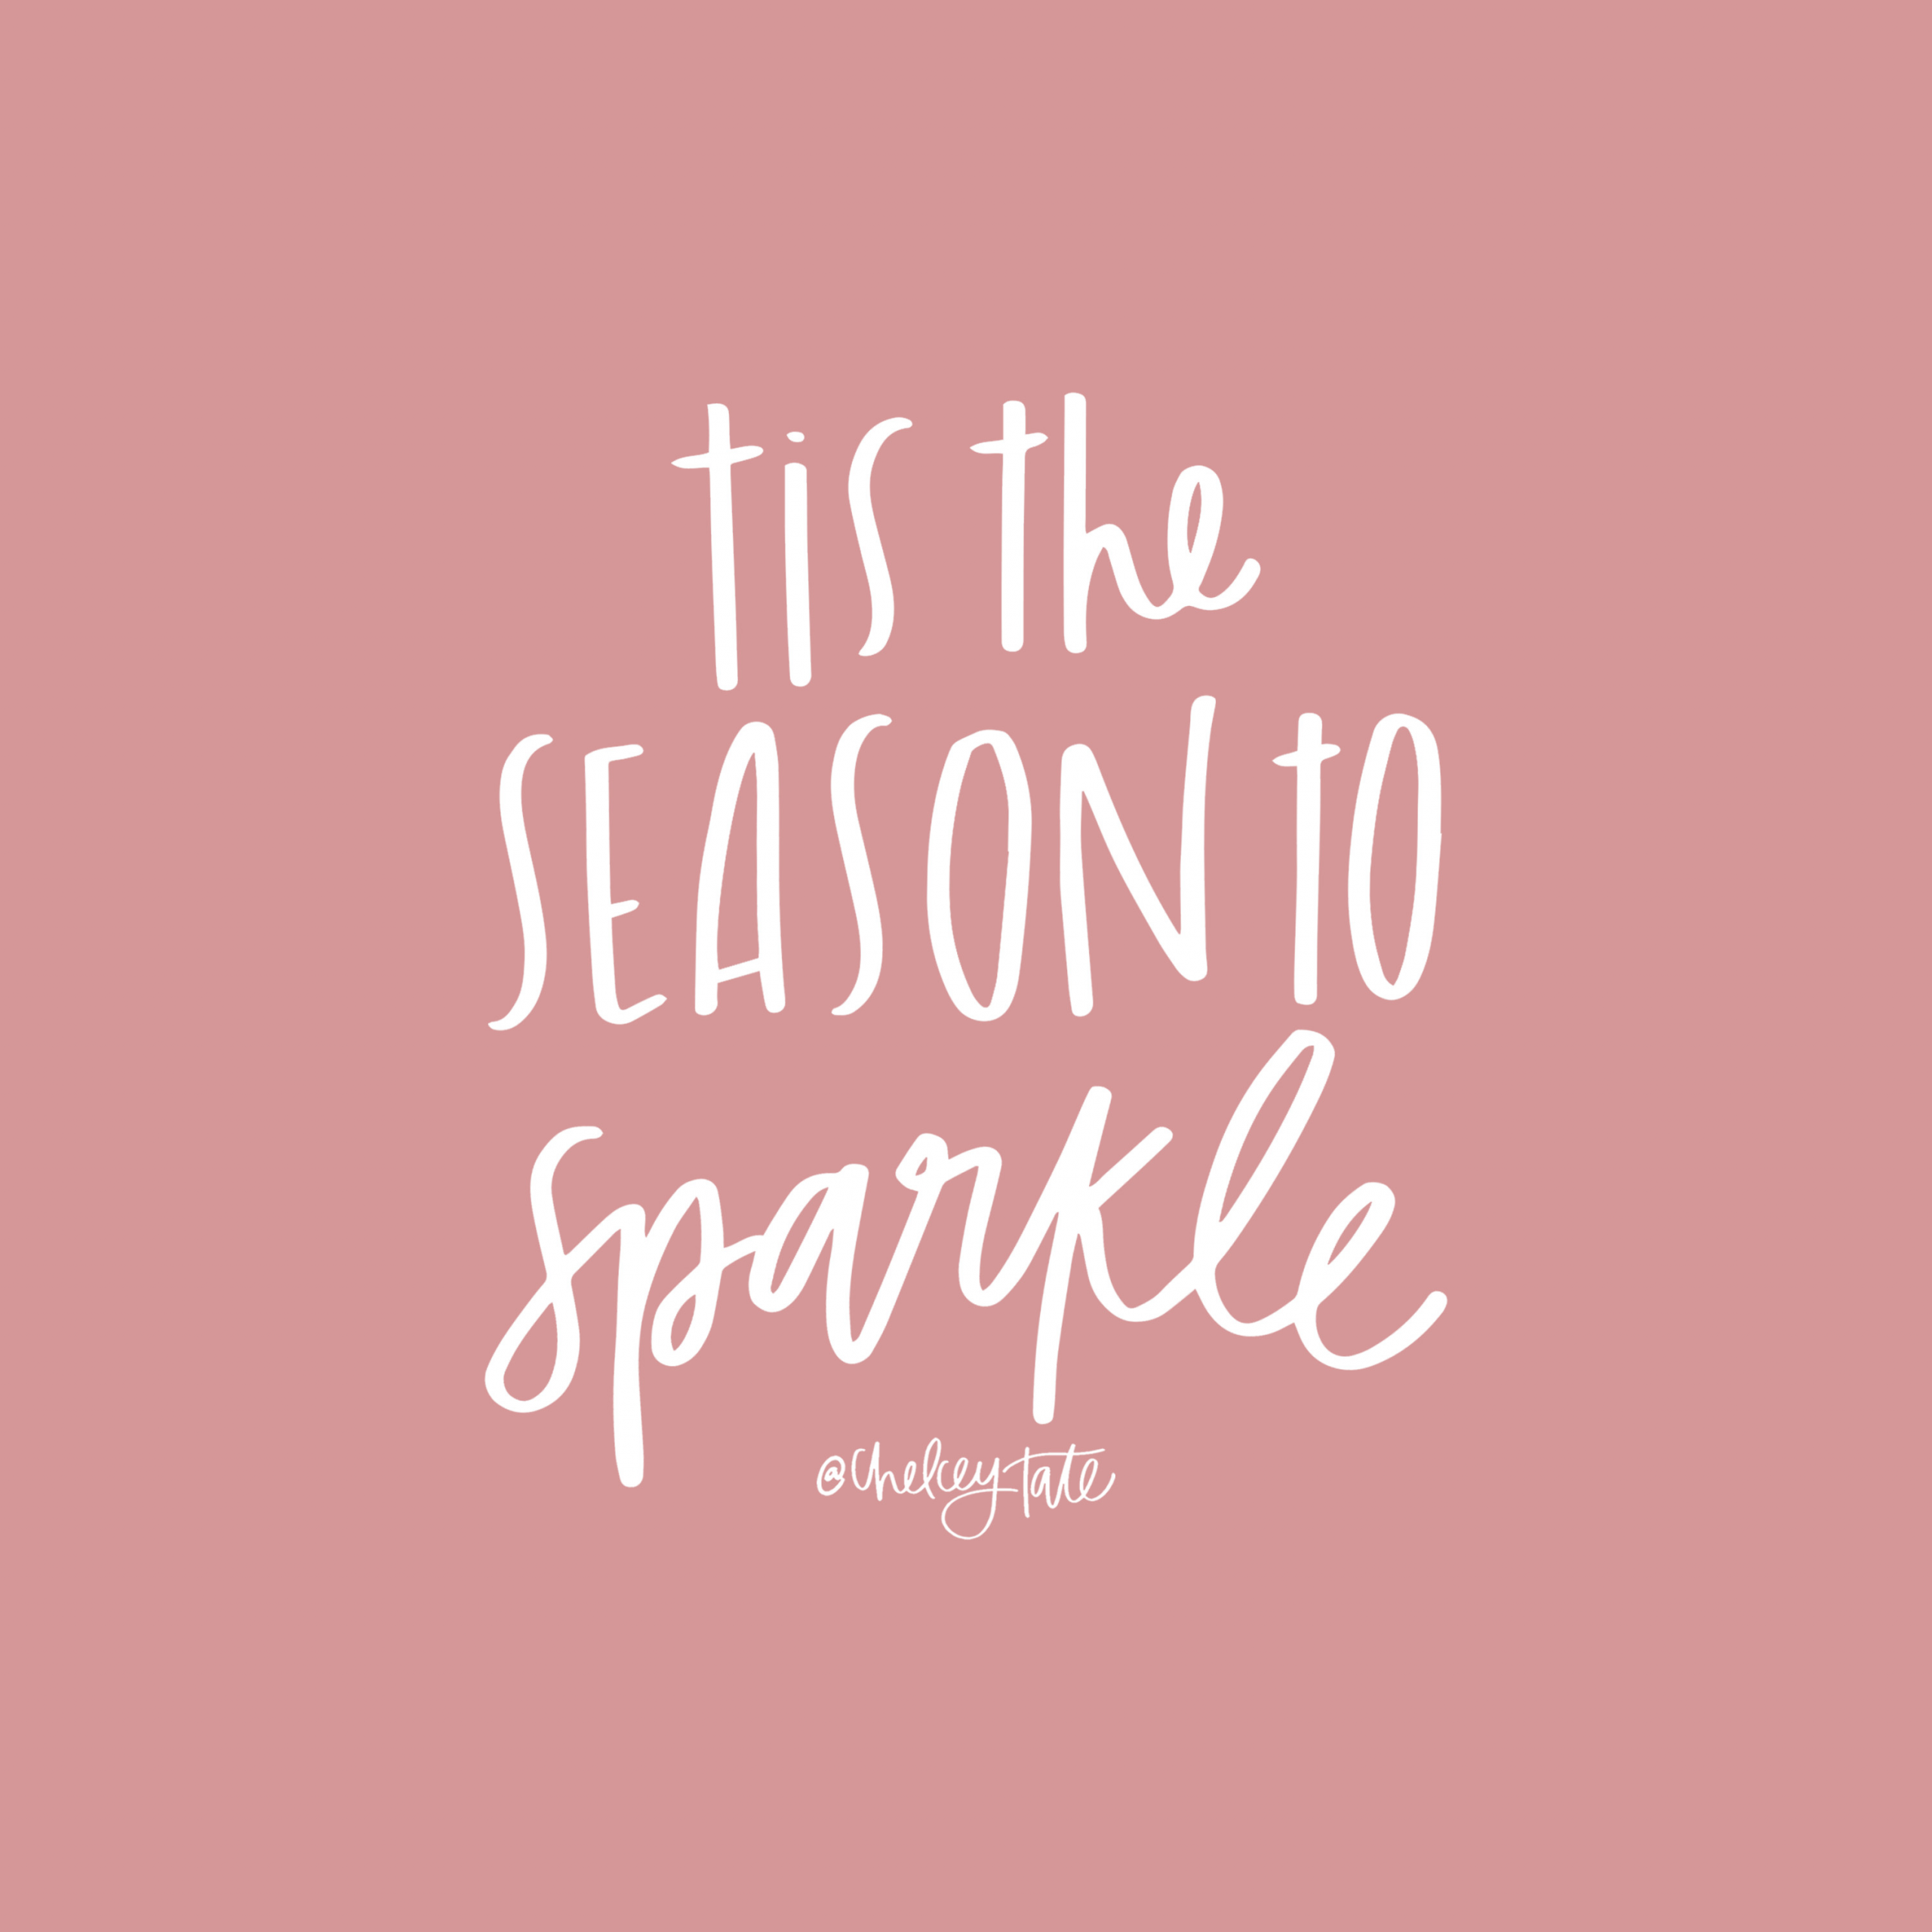 Christmas Tumblr Quotes
 Tis the season to sparkle Christmas quote Lettering via